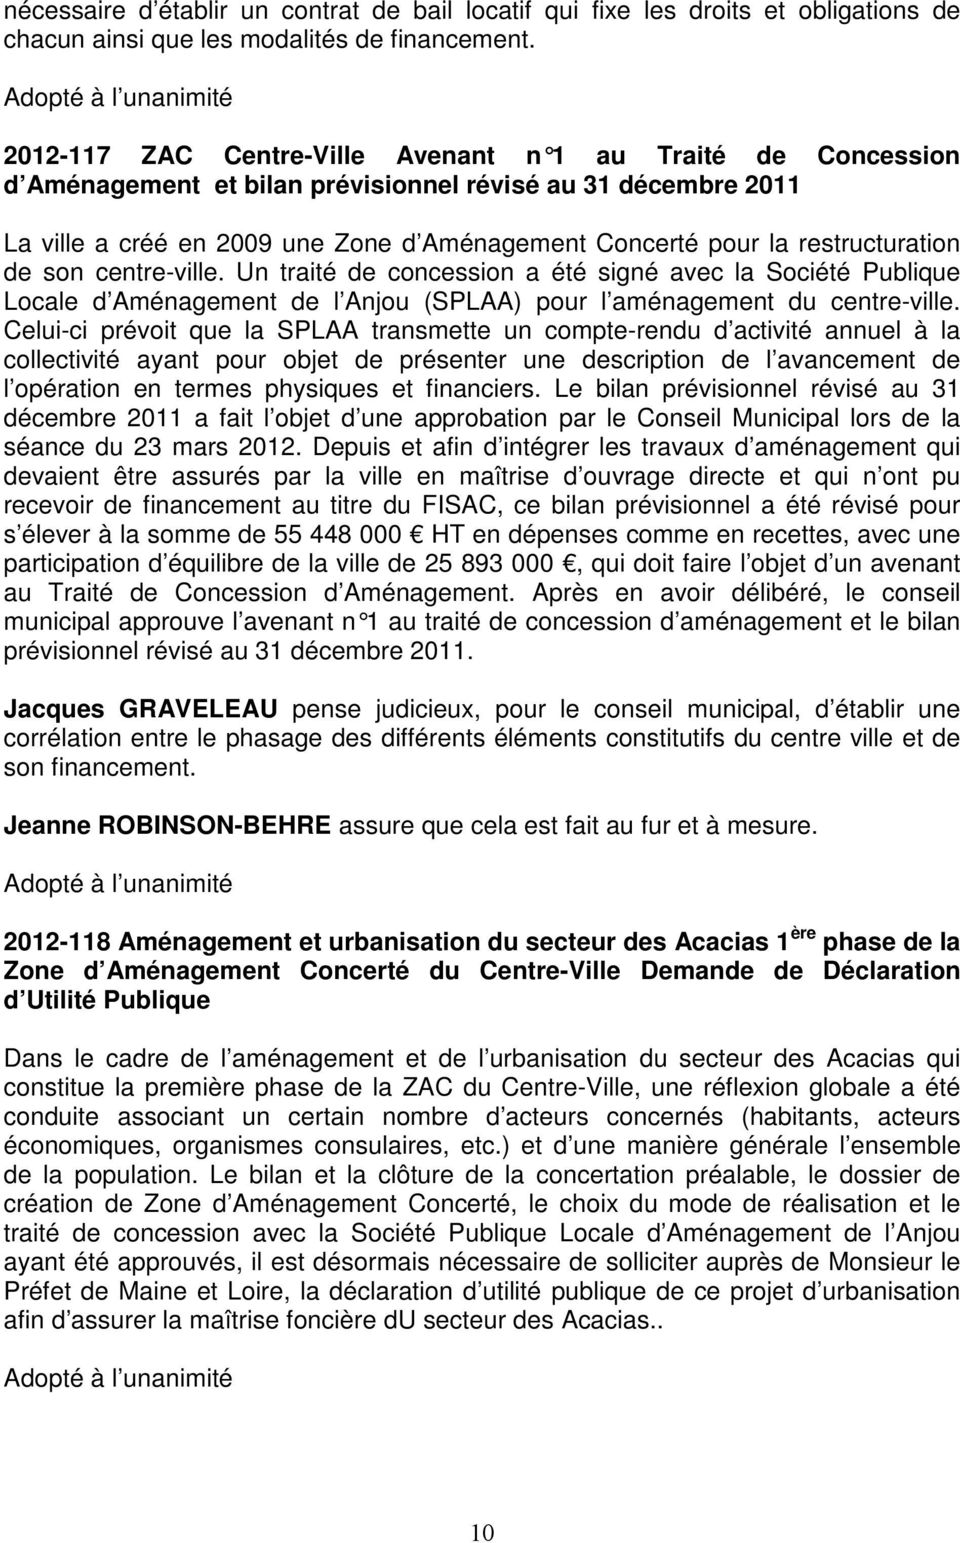 restructuration de son centre-ville. Un traité de concession a été signé avec la Société Publique Locale d Aménagement de l Anjou (SPLAA) pour l aménagement du centre-ville.